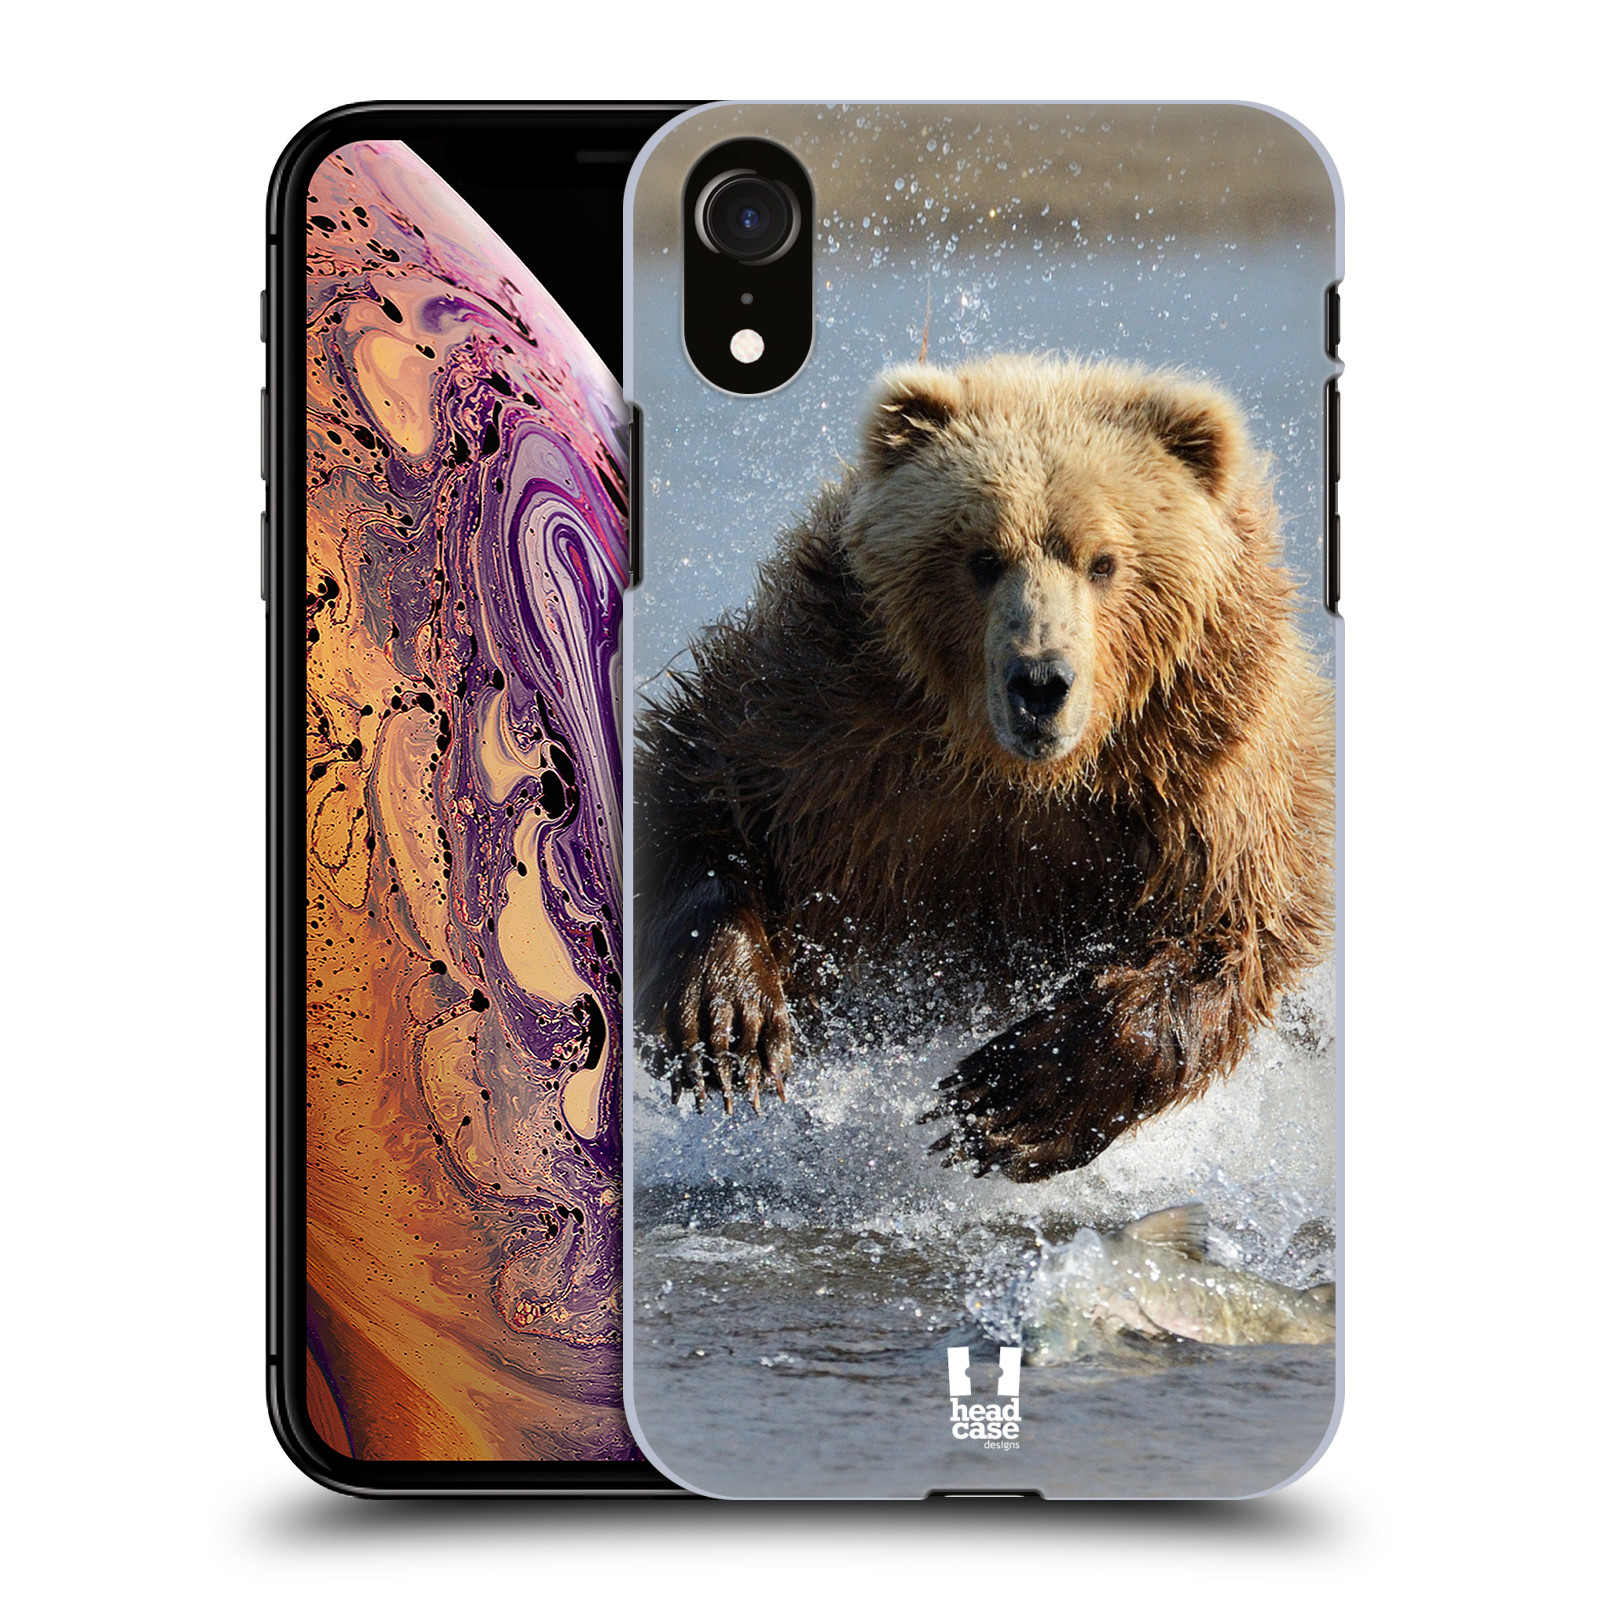 HEAD CASE plastový obal na mobil Apple Iphone XR vzor Divočina, Divoký život a zvířata foto MEDVĚD GRIZZLY HŇEDÁ